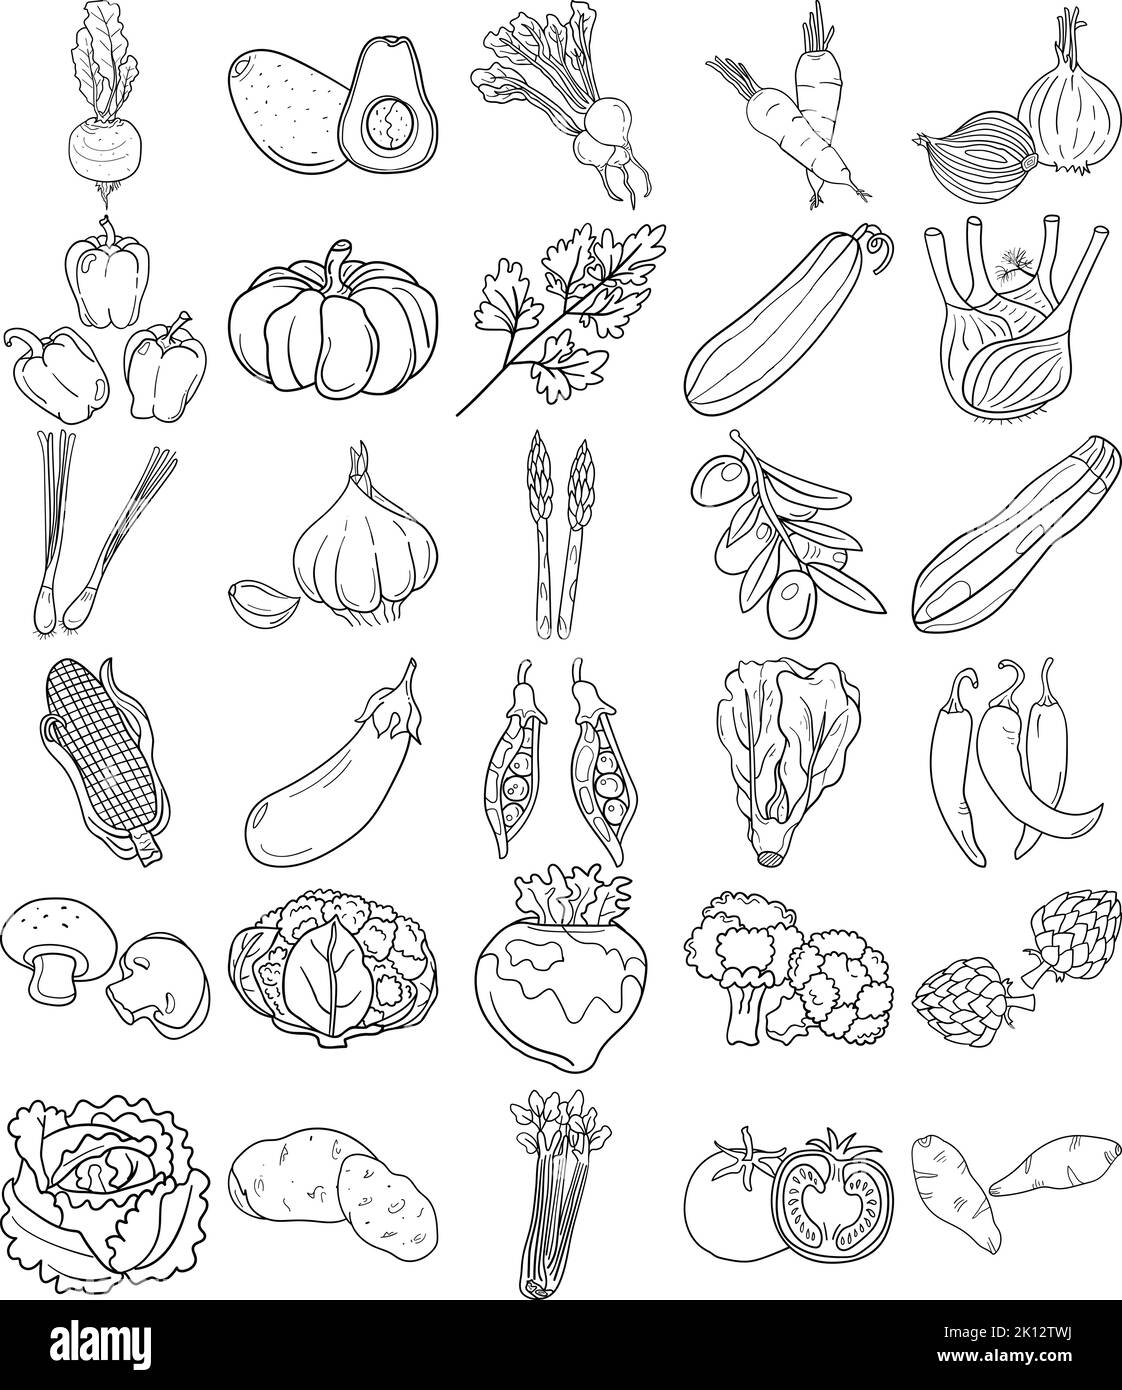 Ensemble de légumes dessinés à la main pour dessin artistique avec avocat, artichaut, asperges, maïs, champignons, Brocoli, chou-fleur, concombre, Bell pepp Illustration de Vecteur